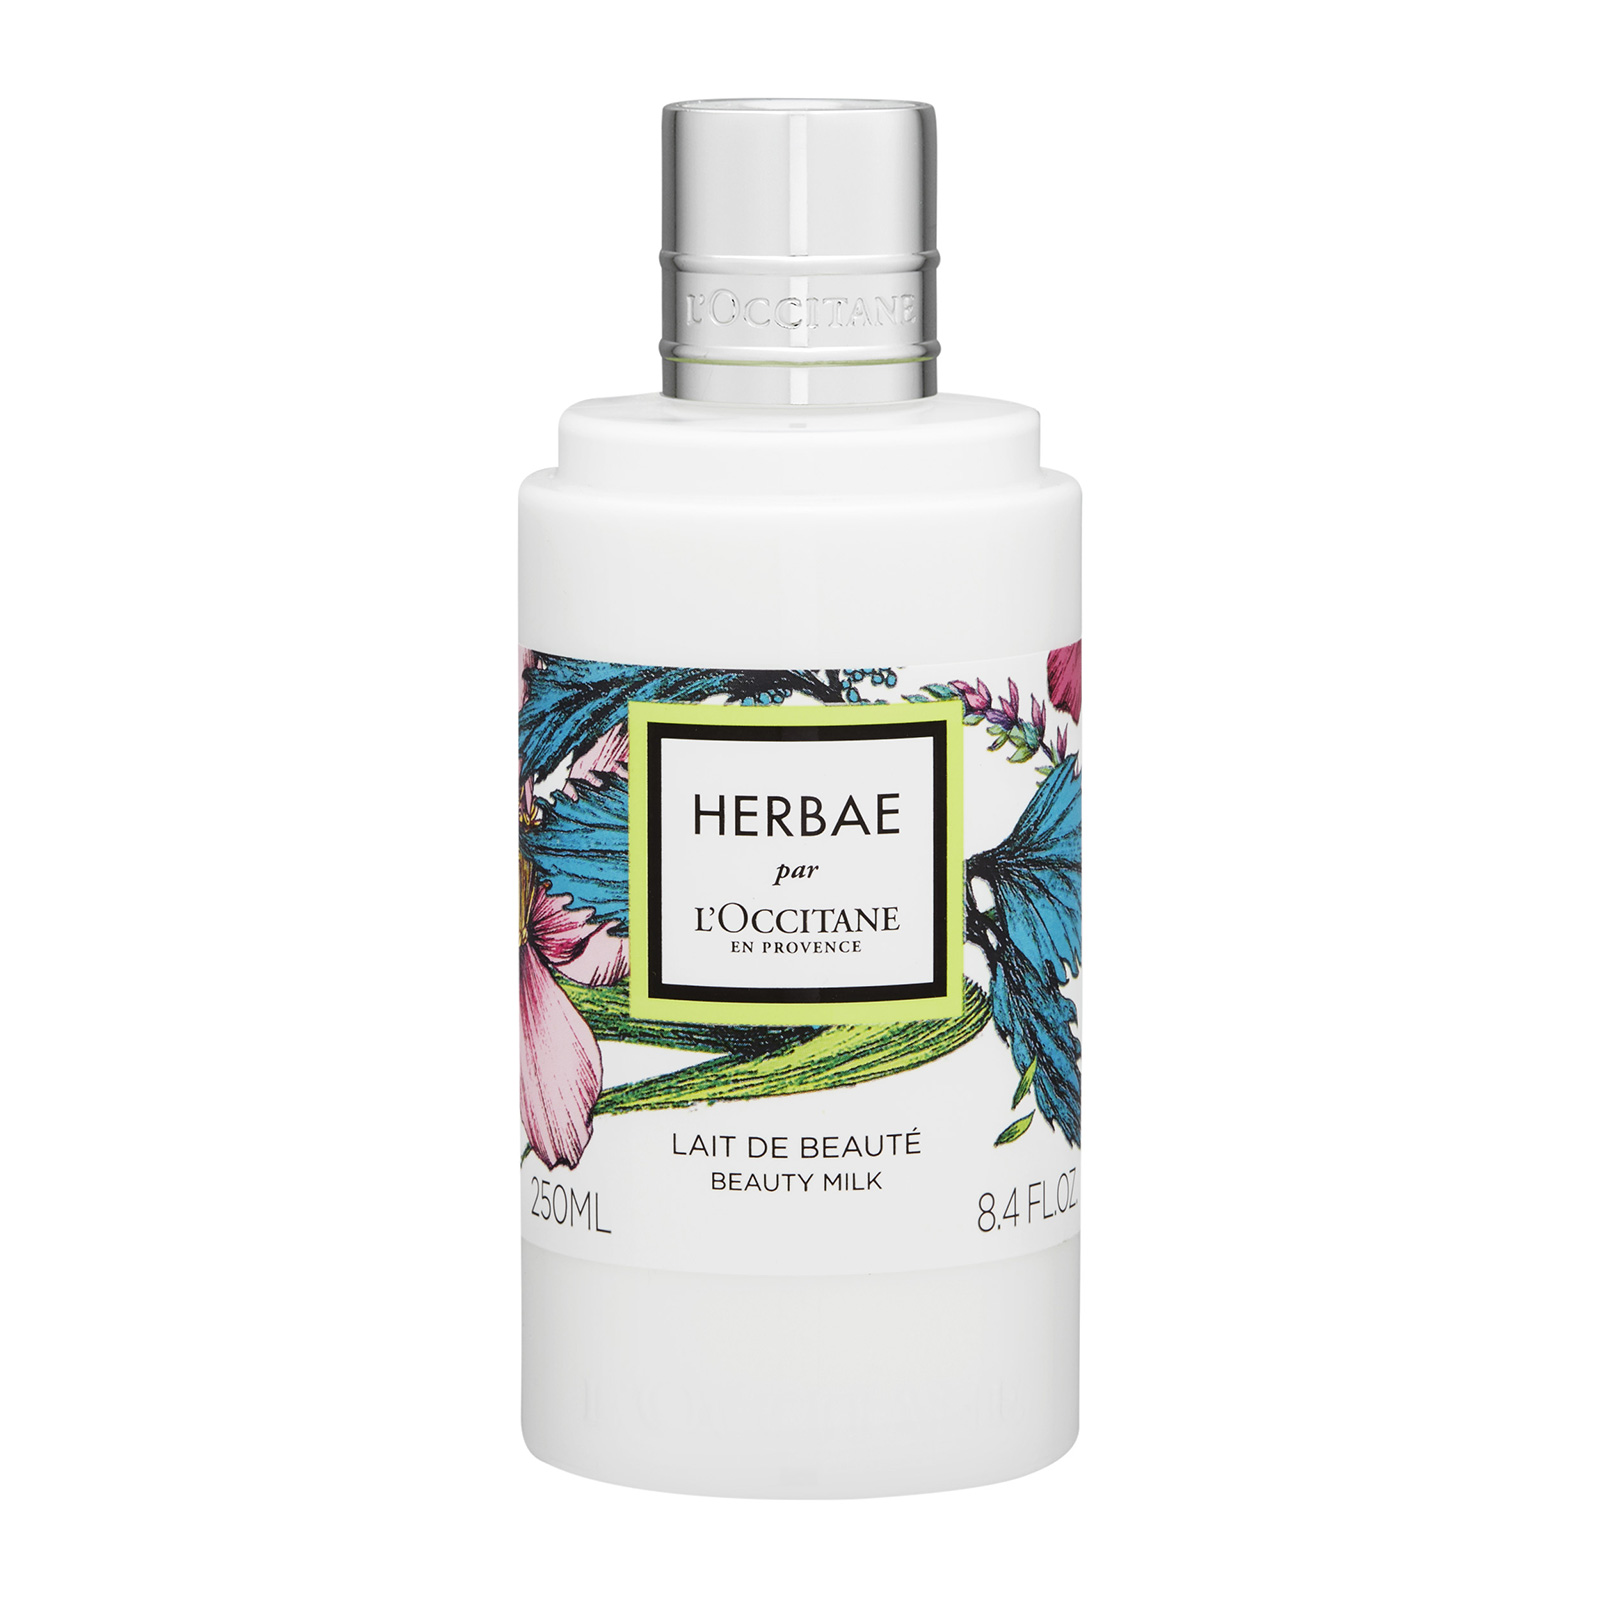 Herbae Par Beauty Milk